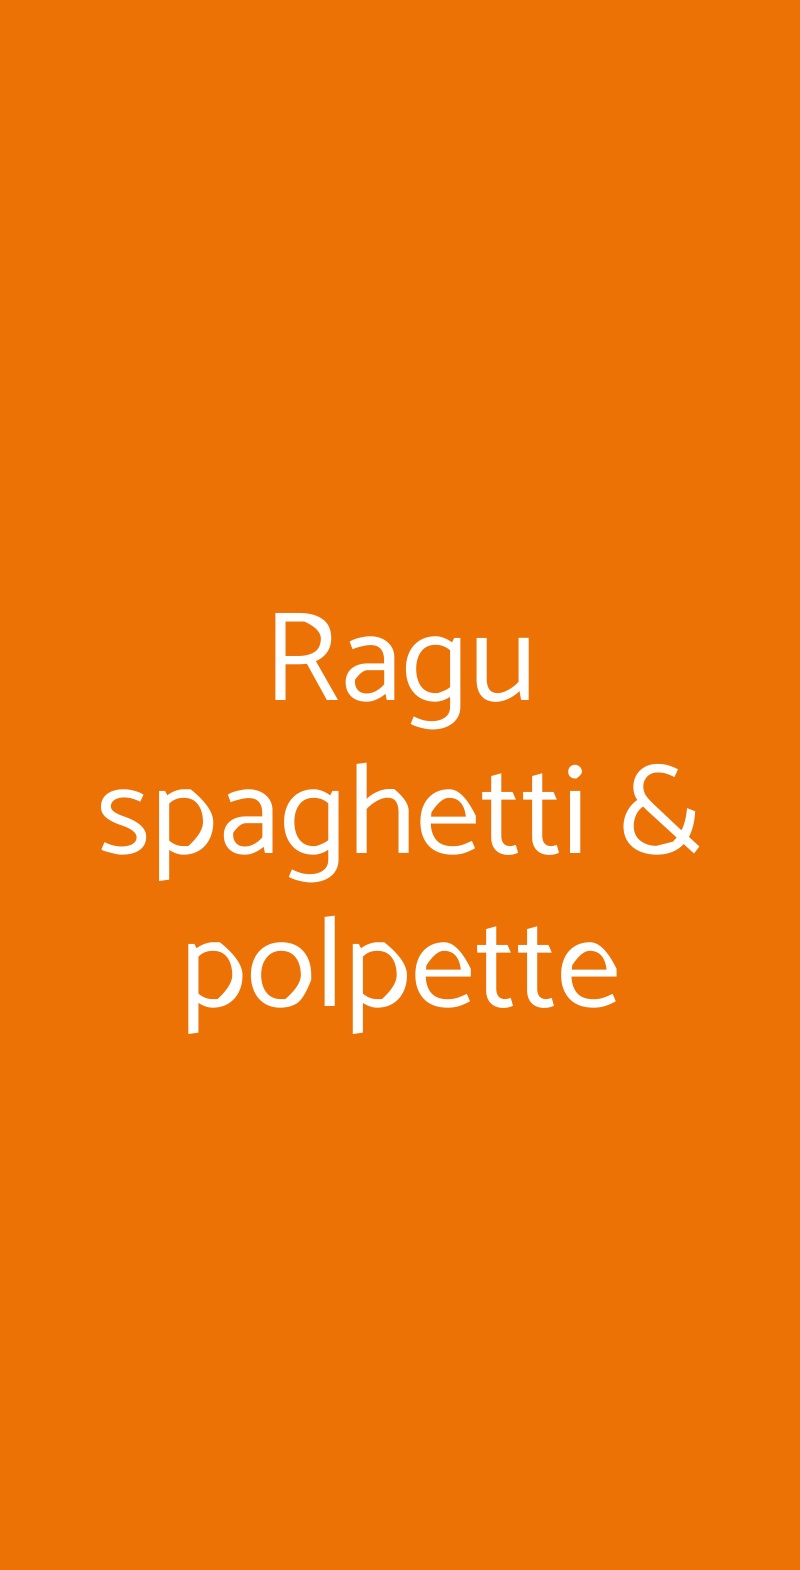 Ragu spaghetti & polpette Reggio Calabria menù 1 pagina